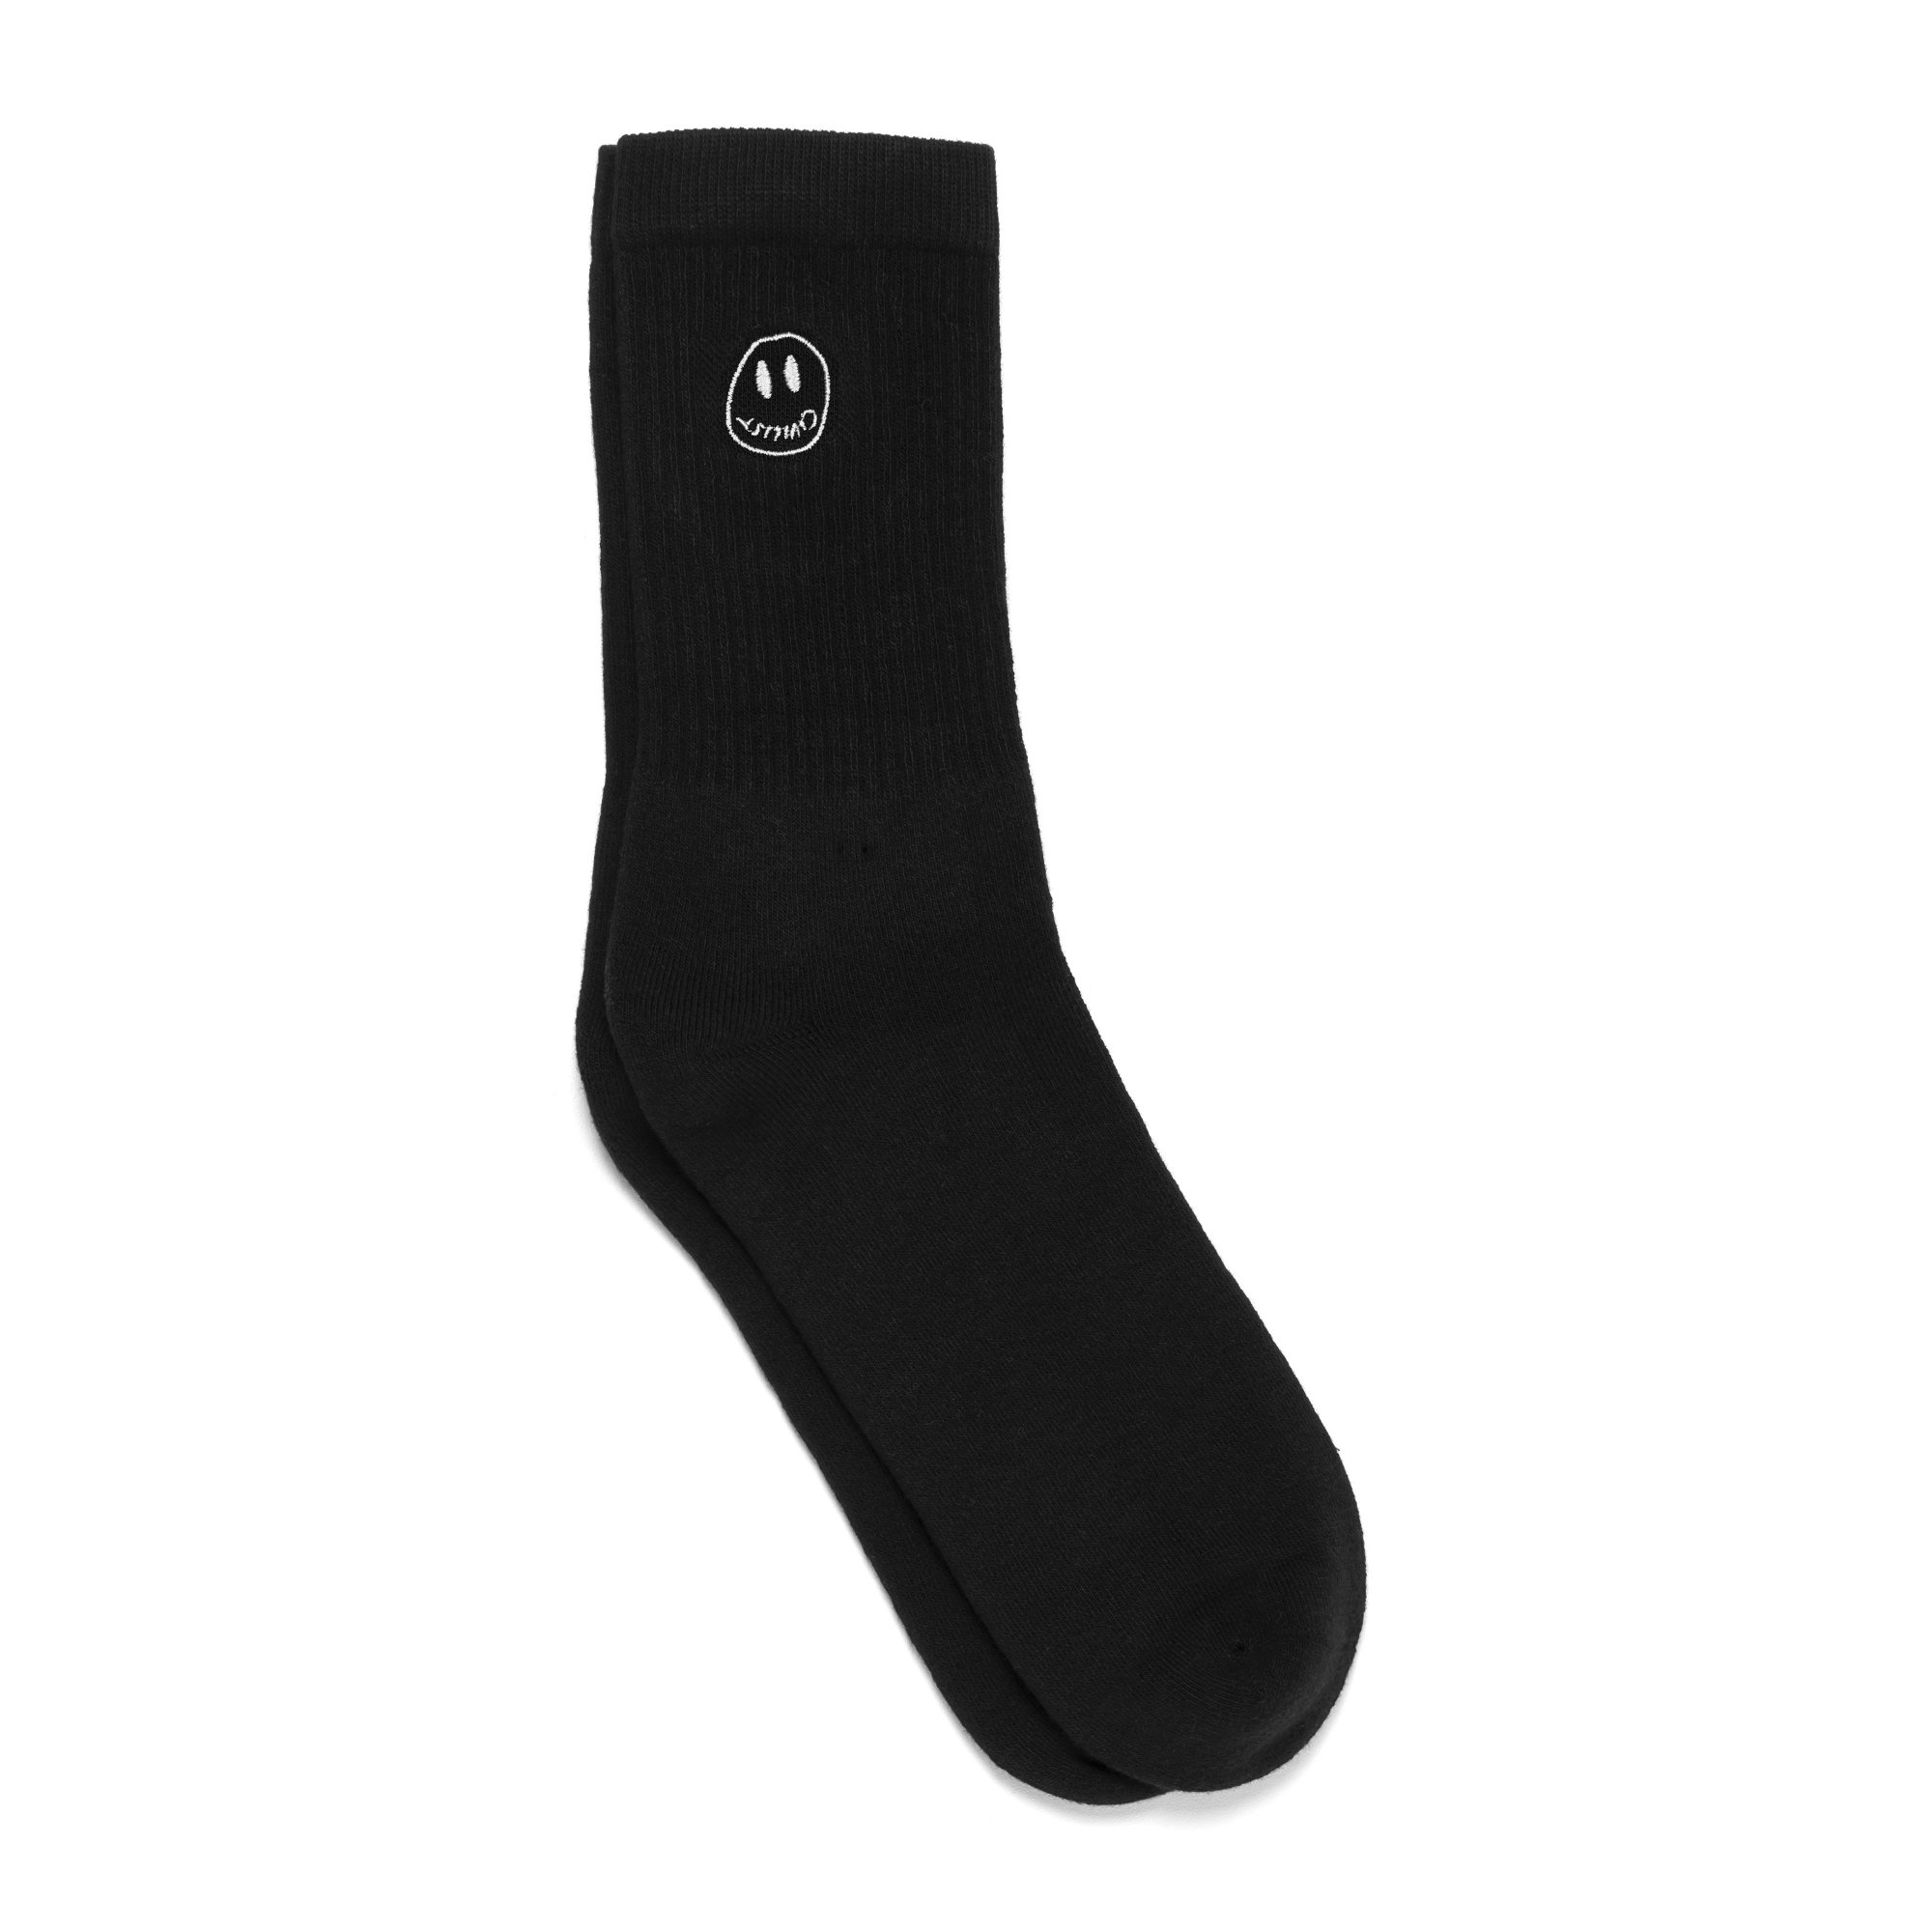 CIVILIST<br>Momo Smiler Socks<br>